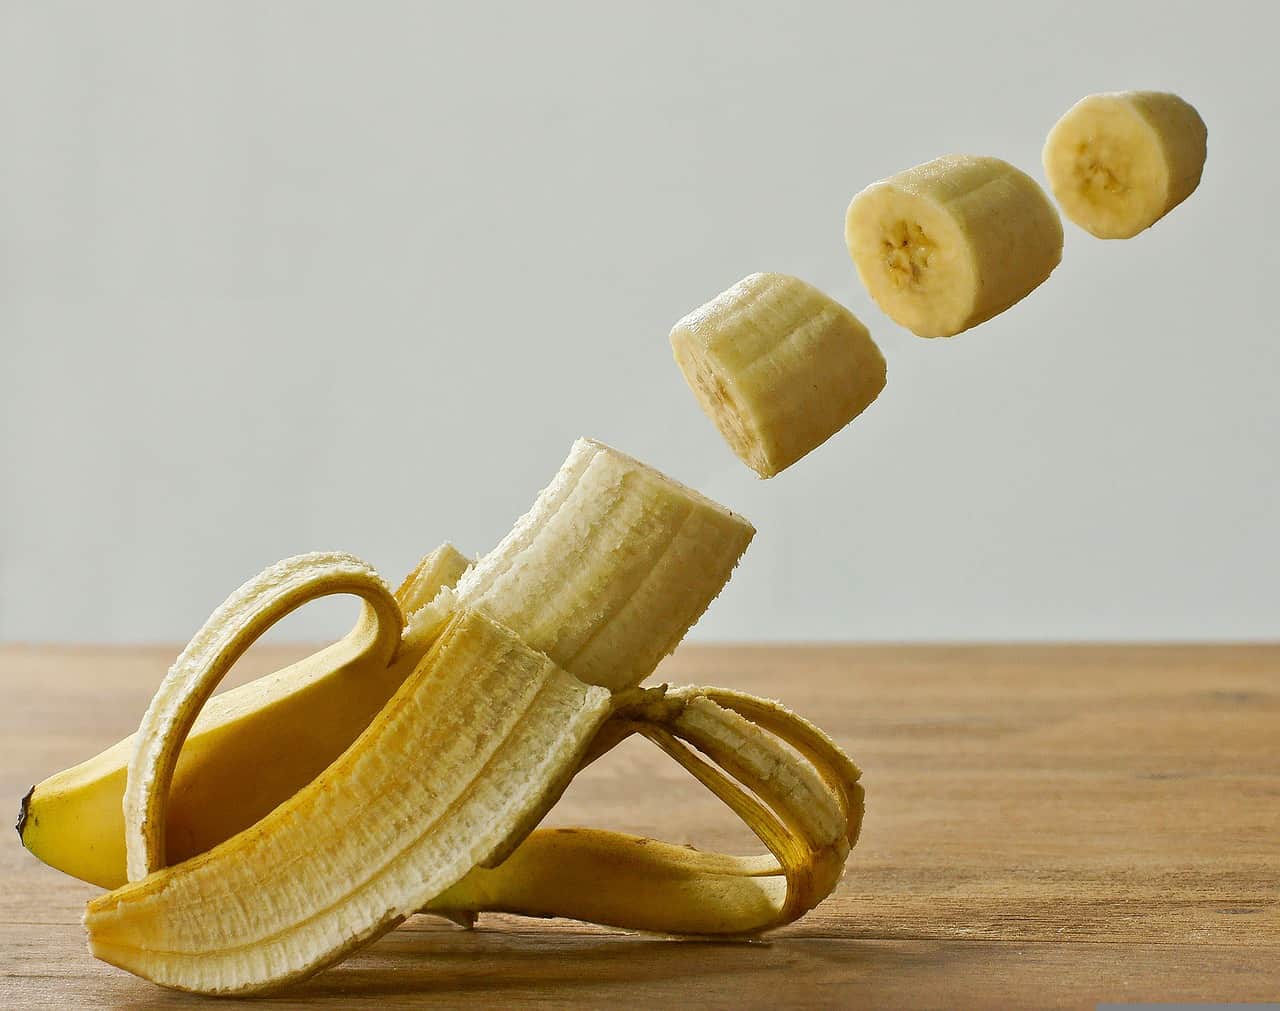 Nutrition info of Banana - Chopped Banana